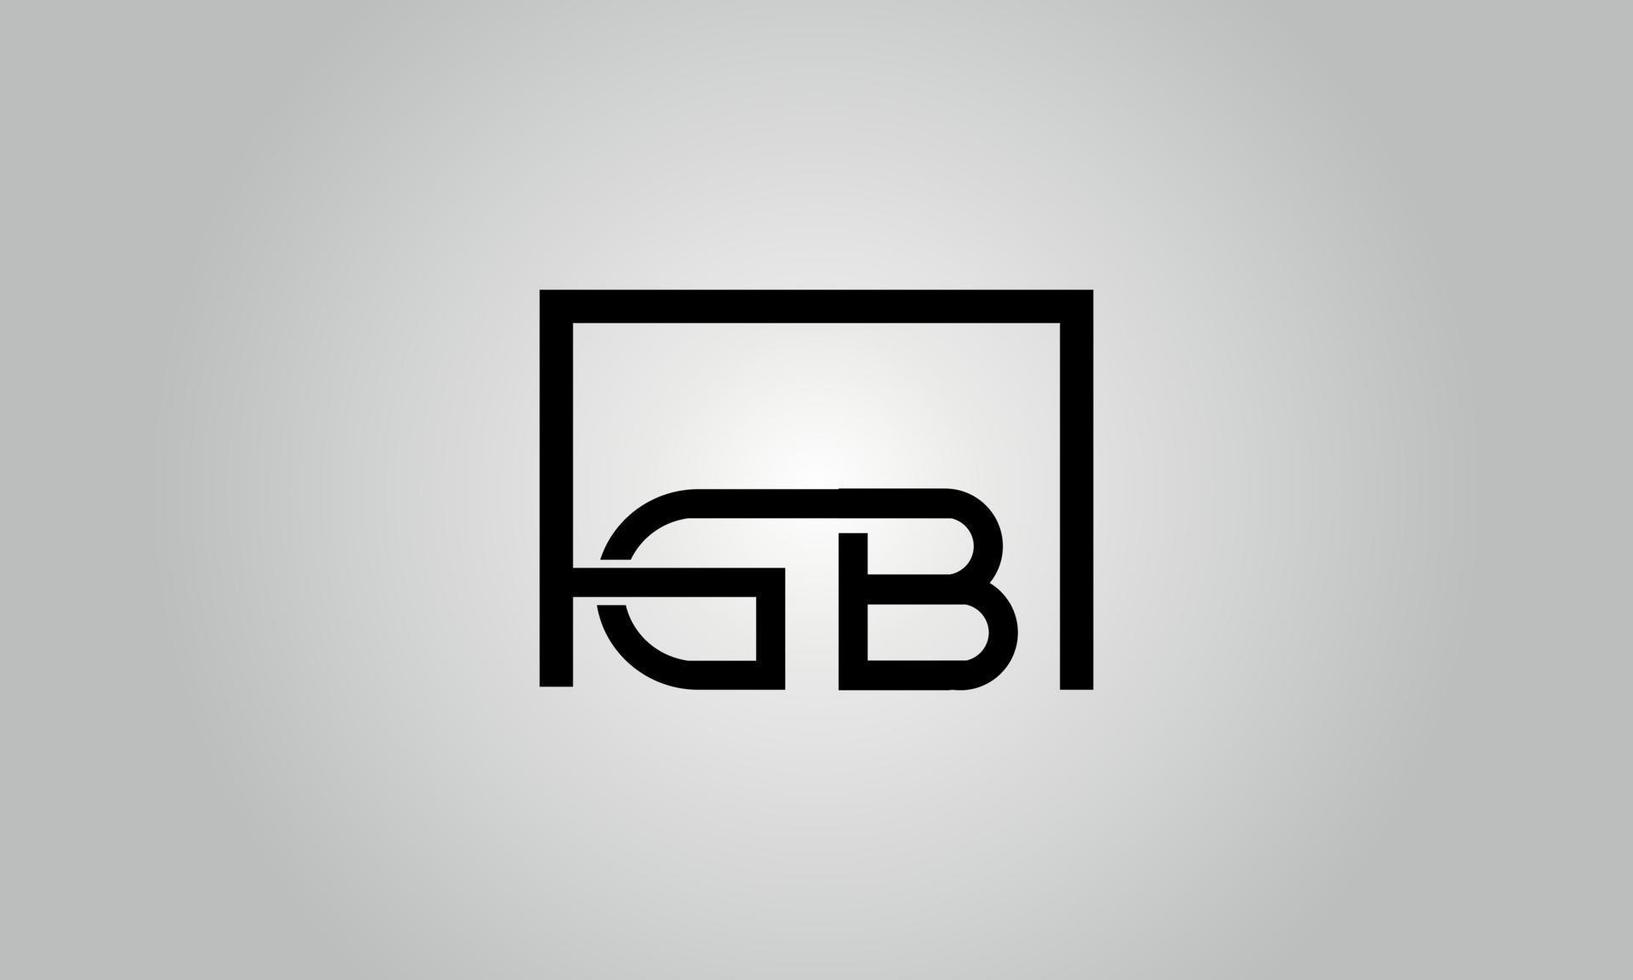 création de logo lettre gb. logo gb avec forme carrée dans le modèle vectoriel gratuit de couleurs noires.